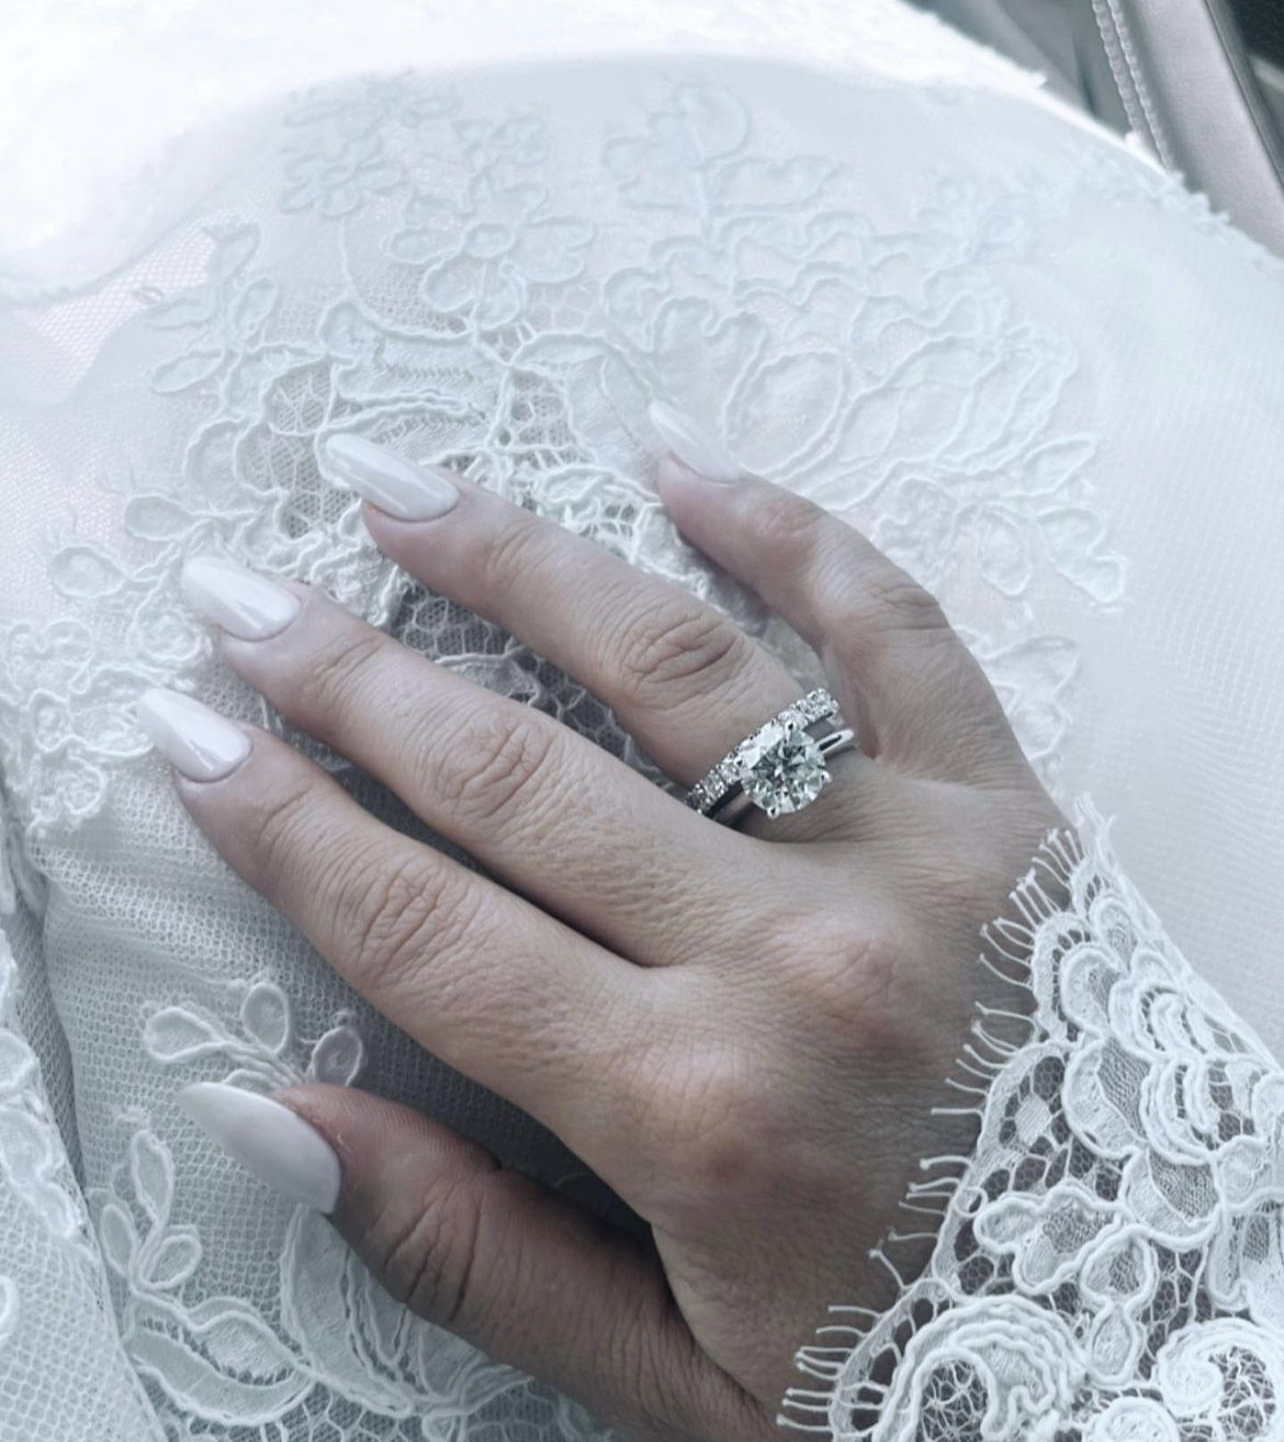 Nuk e mbajti të fshehur, Arbana Osmani zbulon unazën e martesës –  Indeksonline.net